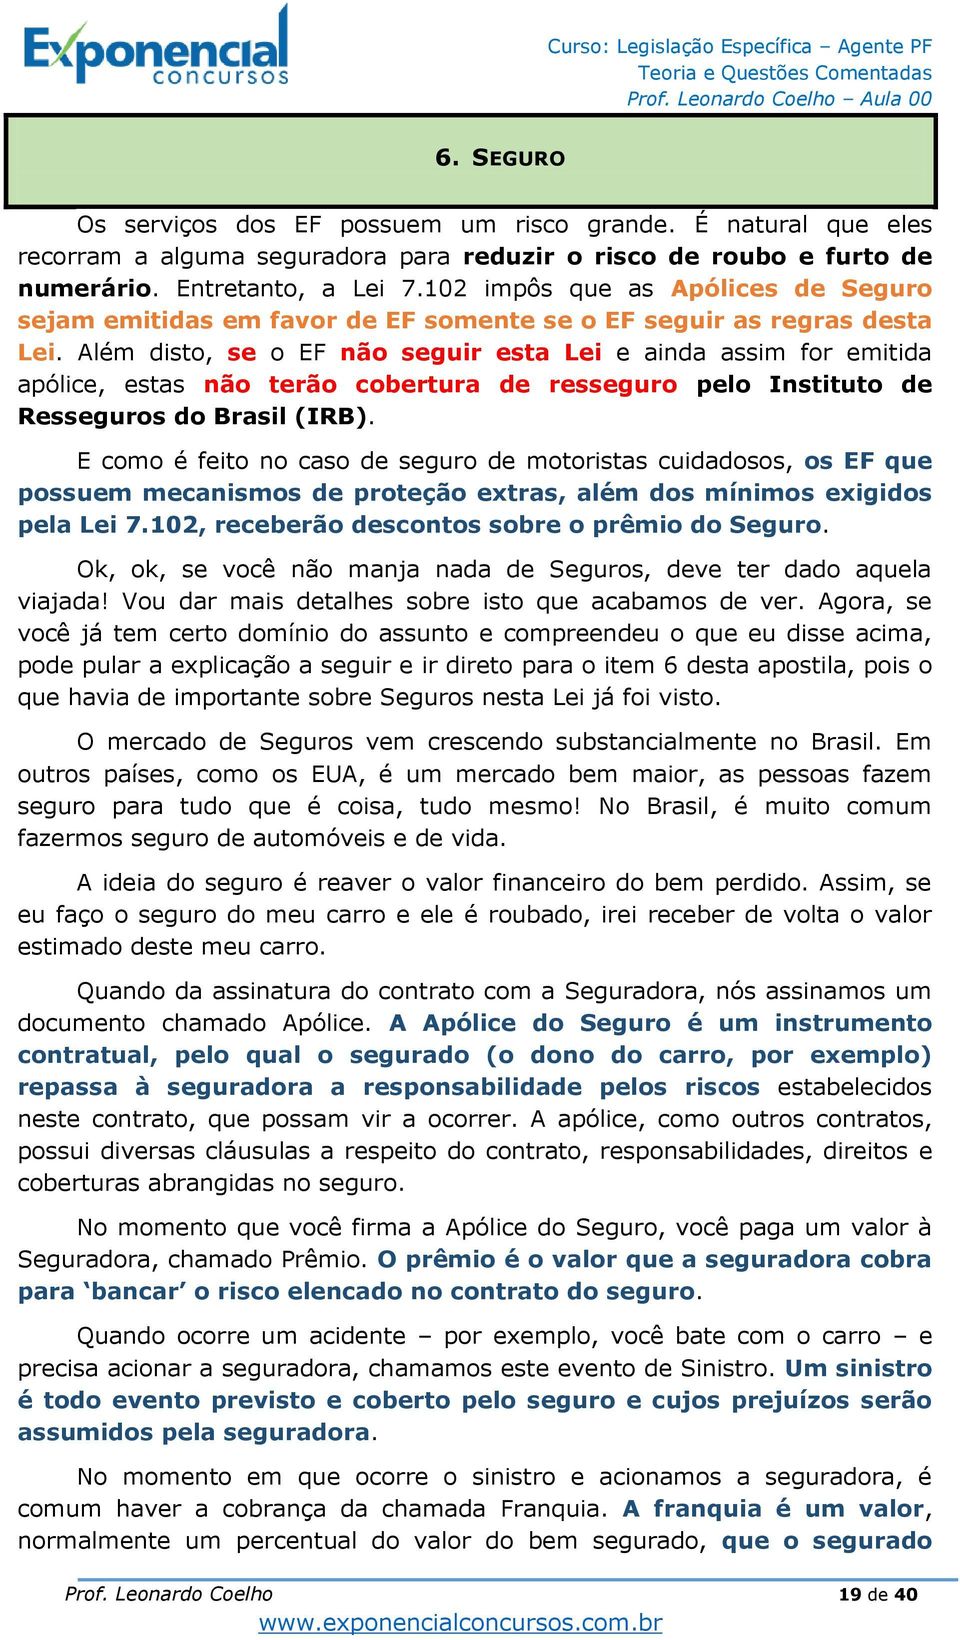 Além disto, se o EF não seguir esta Lei e ainda assim for emitida apólice, estas não terão cobertura de resseguro pelo Instituto de Resseguros do Brasil (IRB).